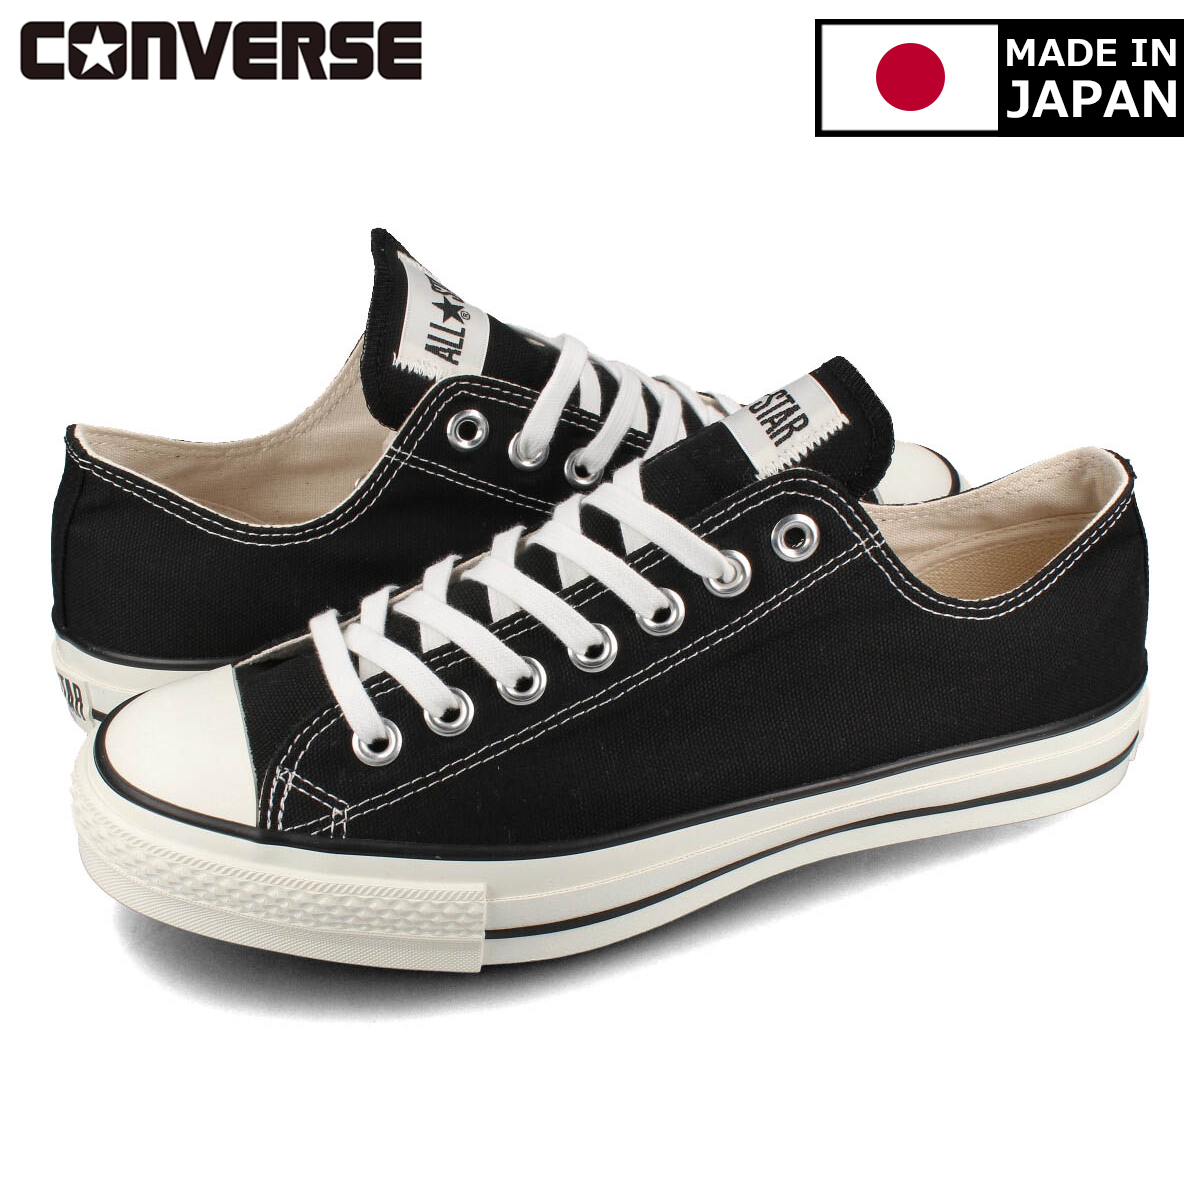 送料無料 CONVERSE コンバース メンズ 靴 スニーカー MADE IN JAPAN 発売モデル メイド イン オールスター CANVAS J 32167431 ジャパン OX STAR BLACK 日本製 送料無料新品 ALL